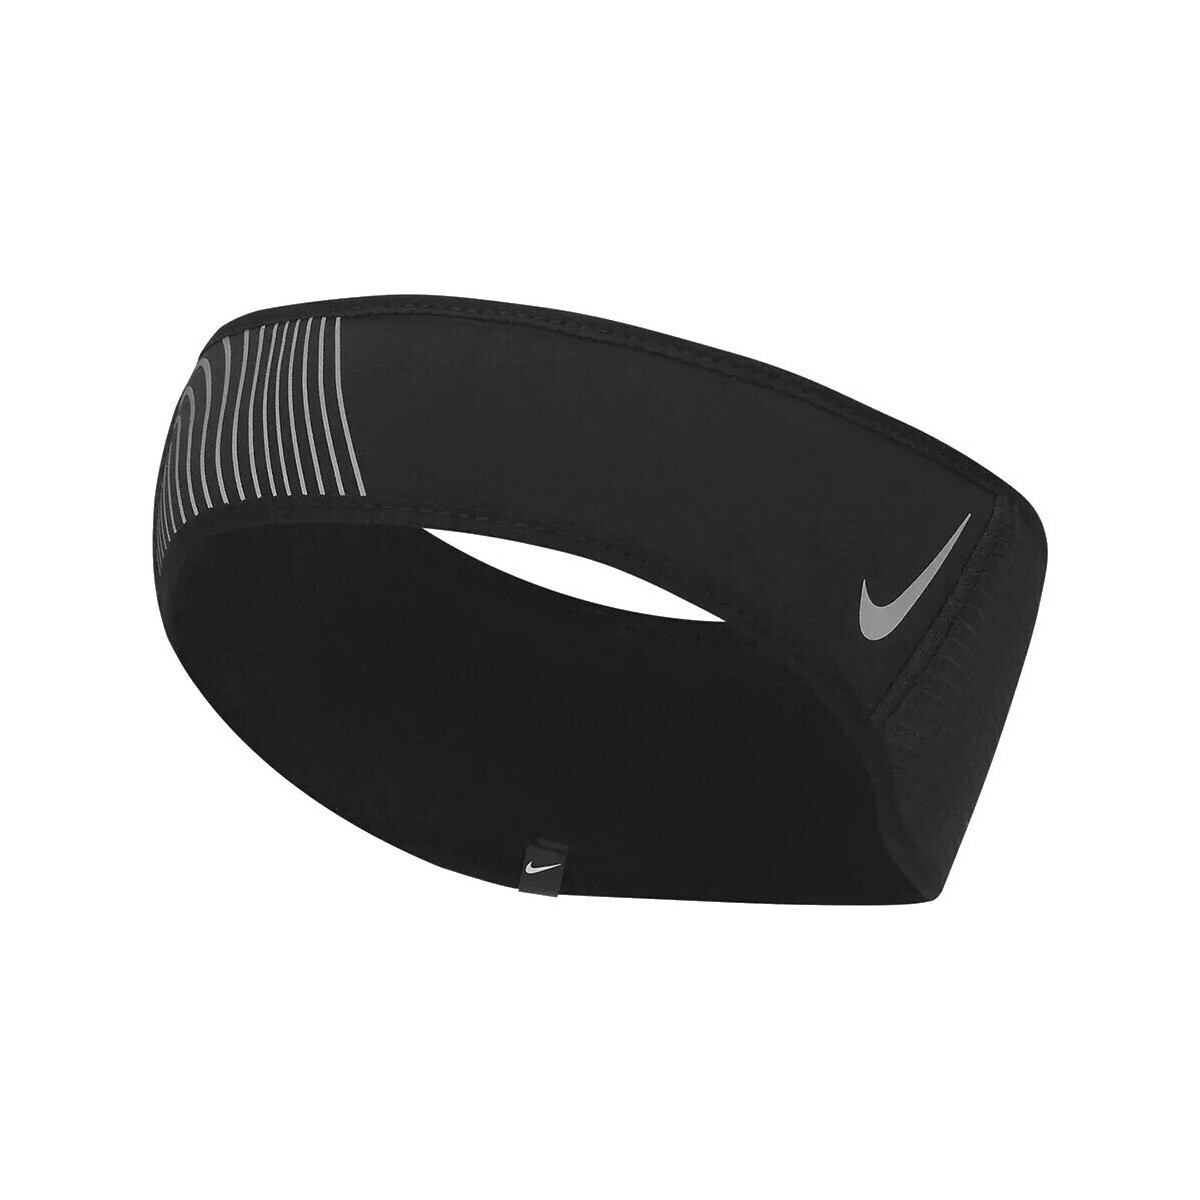 Accesorios Complemento para deporte Nike N1004263082 Negro